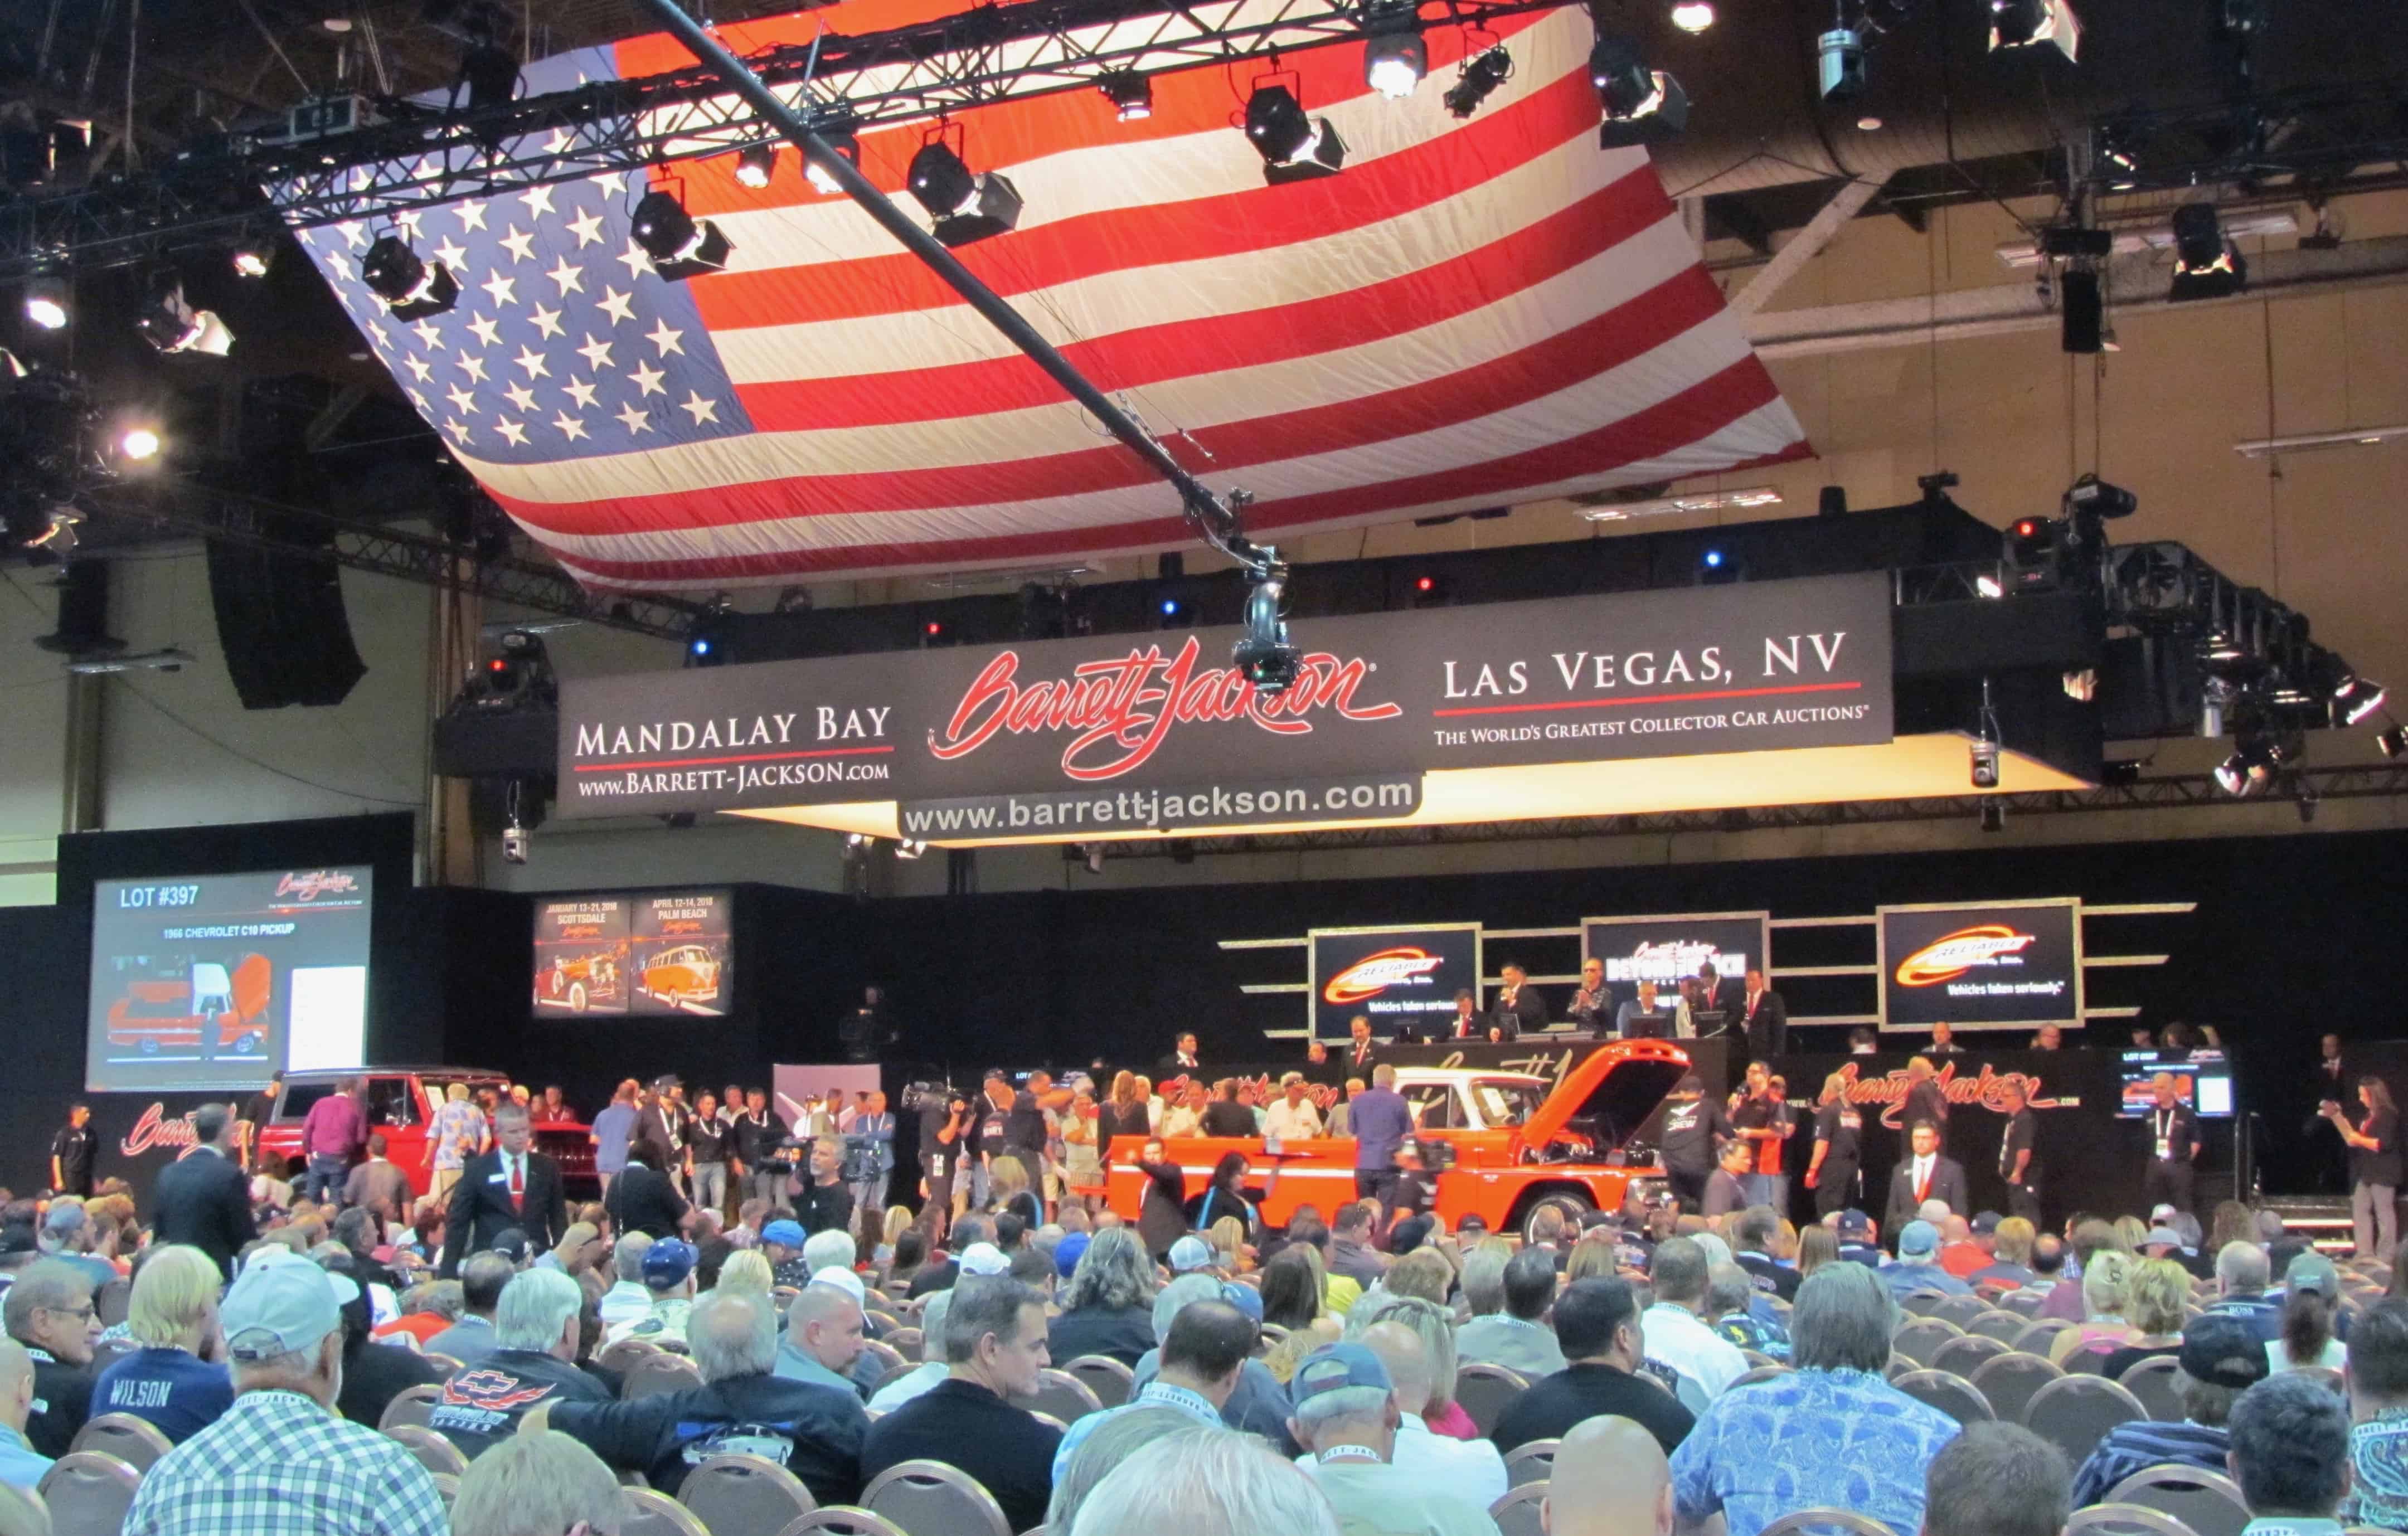 Las Vegas emerges as a major auction venue | ClassicCars.com Journal